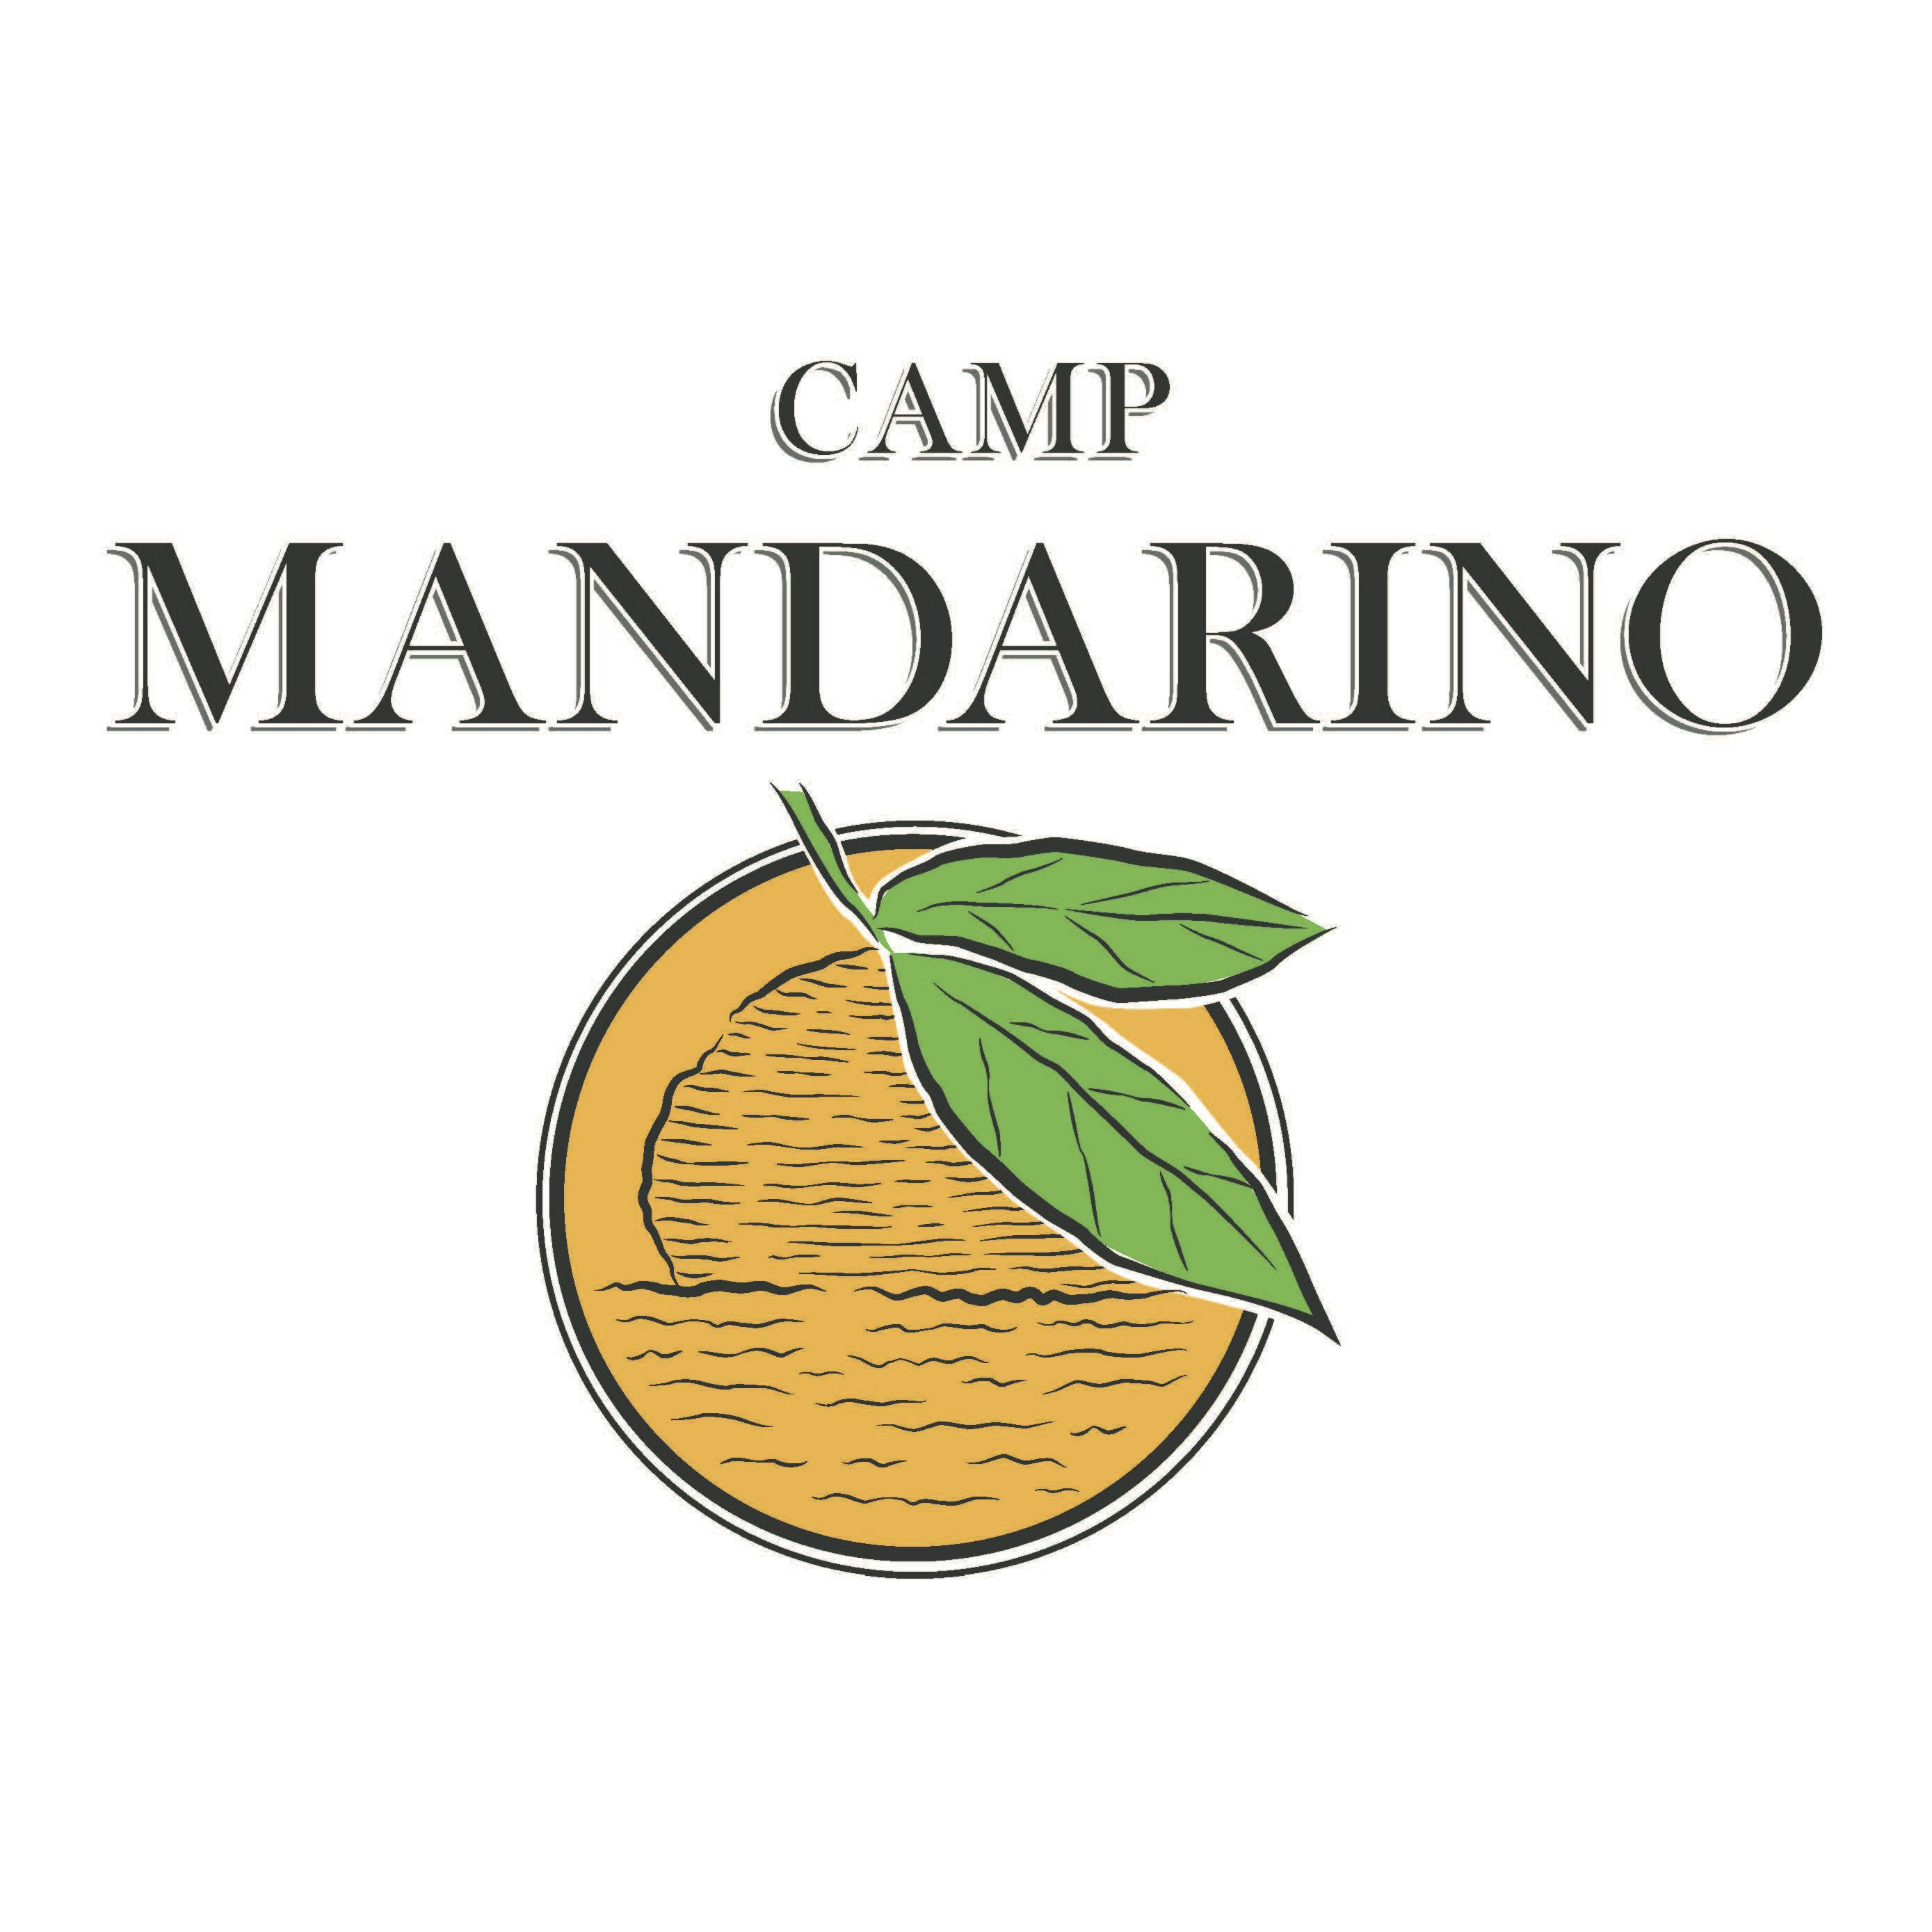 Camp Mandarino